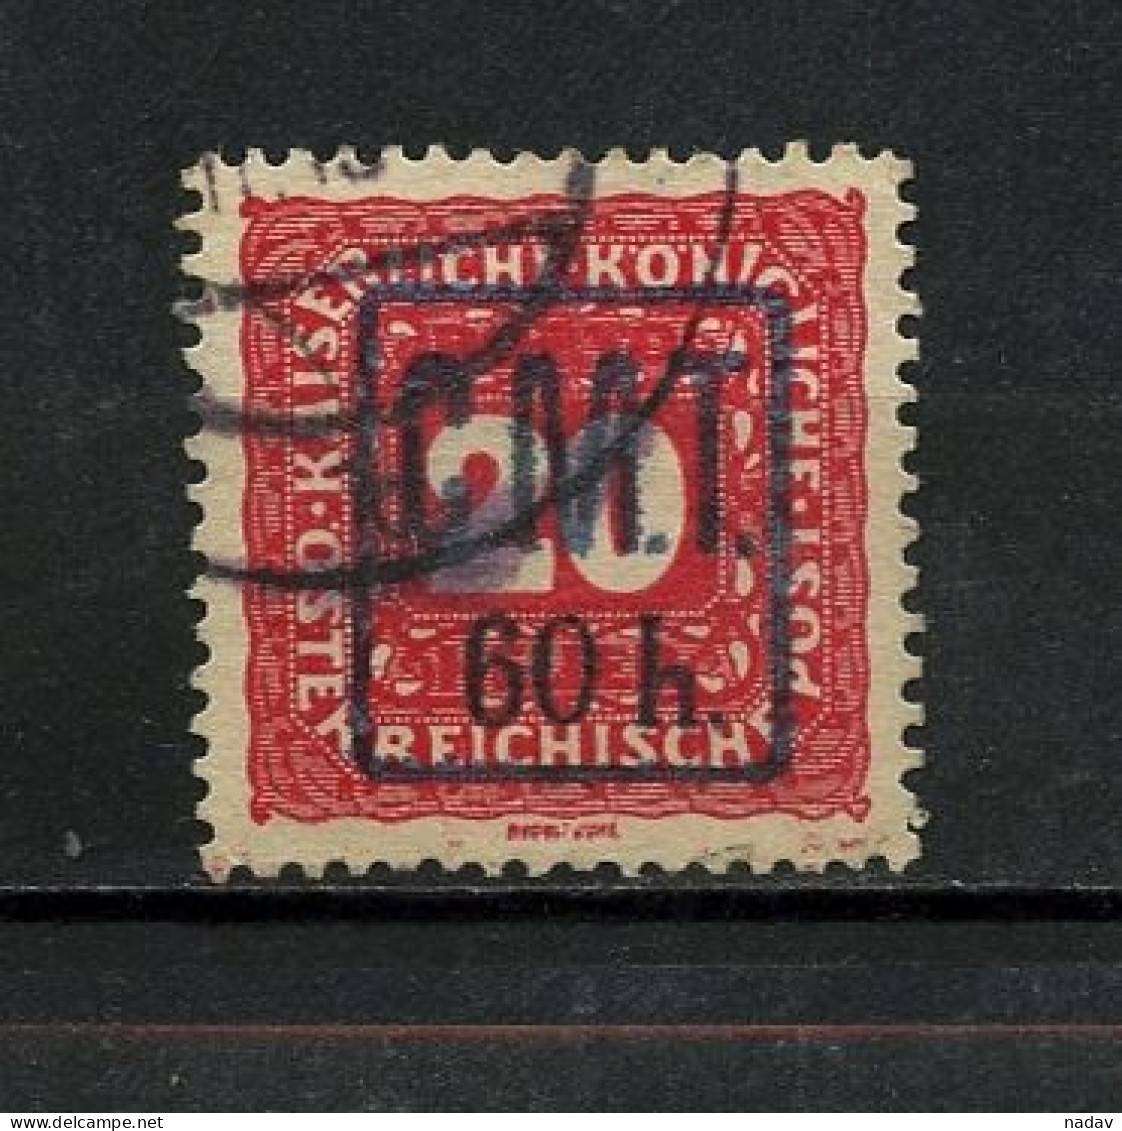 1919, Kolomea (Romanian Occupation), Postage Due Stamps -  Used - Ukraine & Ukraine Occidentale